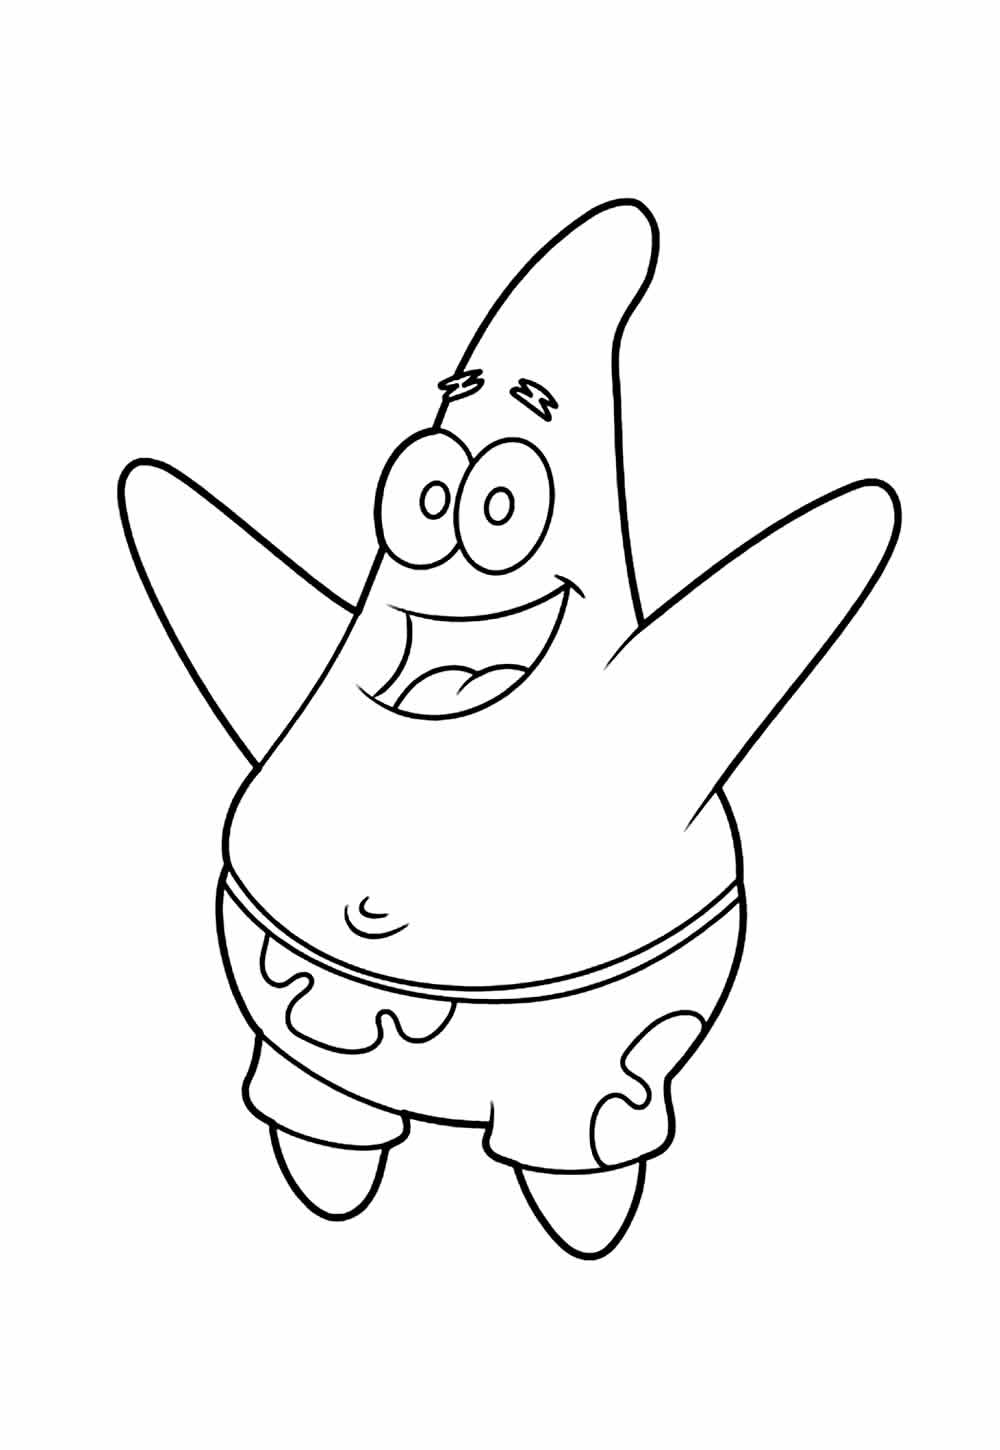 Desenho do Patrick para colorir